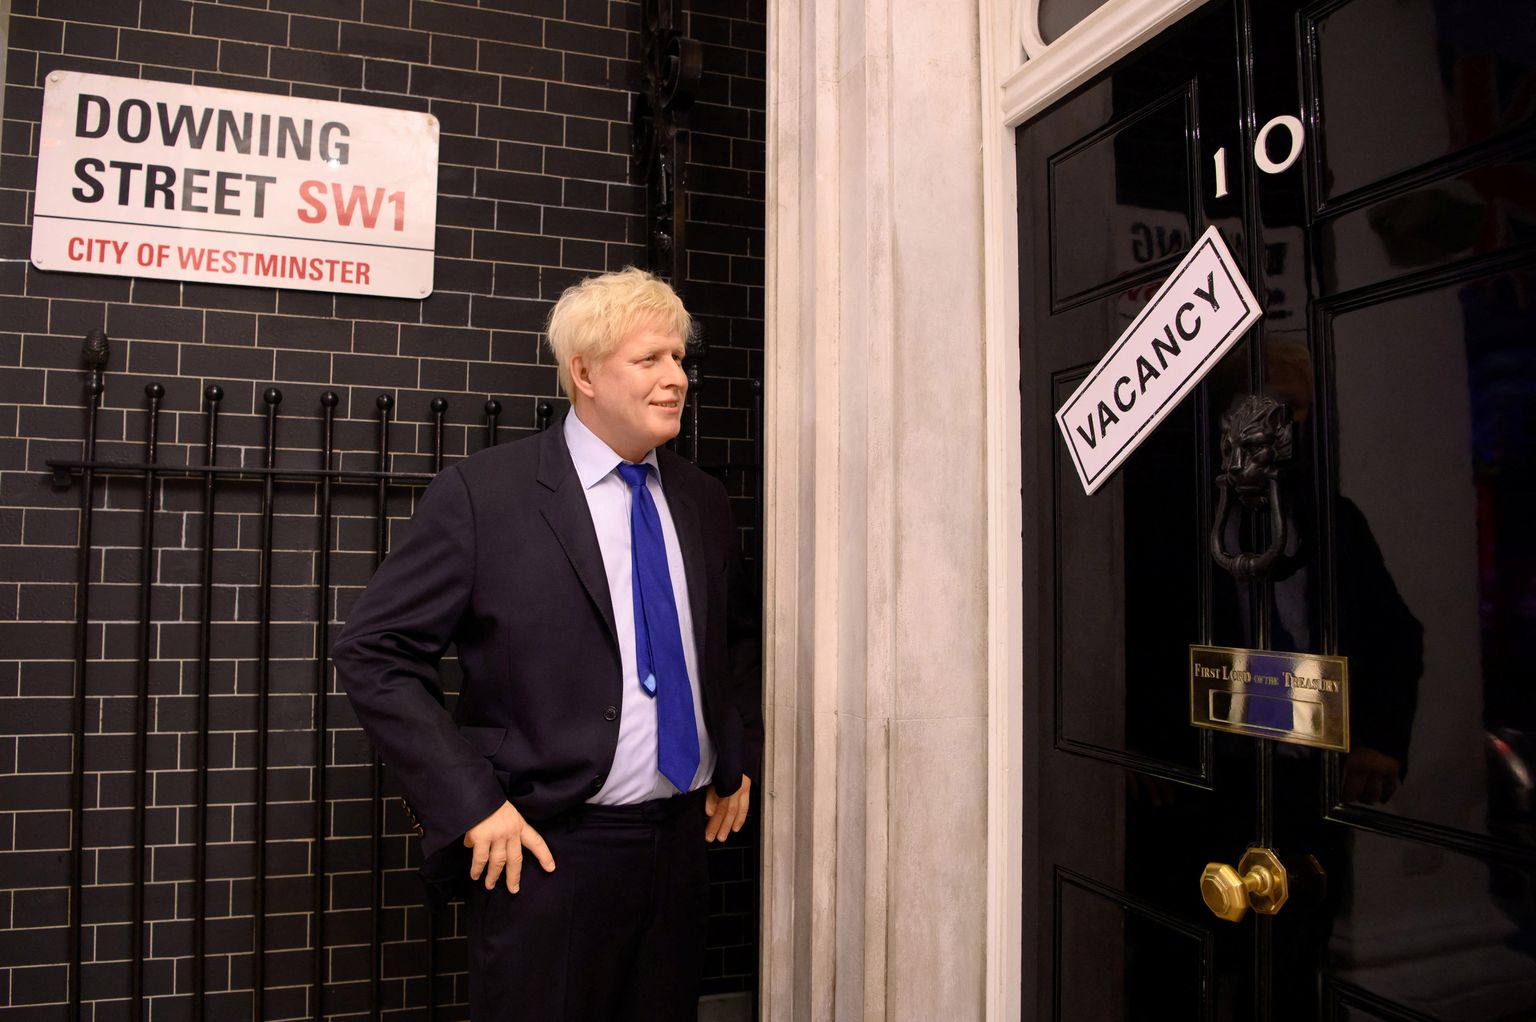 Madame Tussaudsi vahamuusemis olev Boris Johnsonit vahakuju Briti peaministri residentsi (Downing Street 10) ees sildiga vaba töökoht.